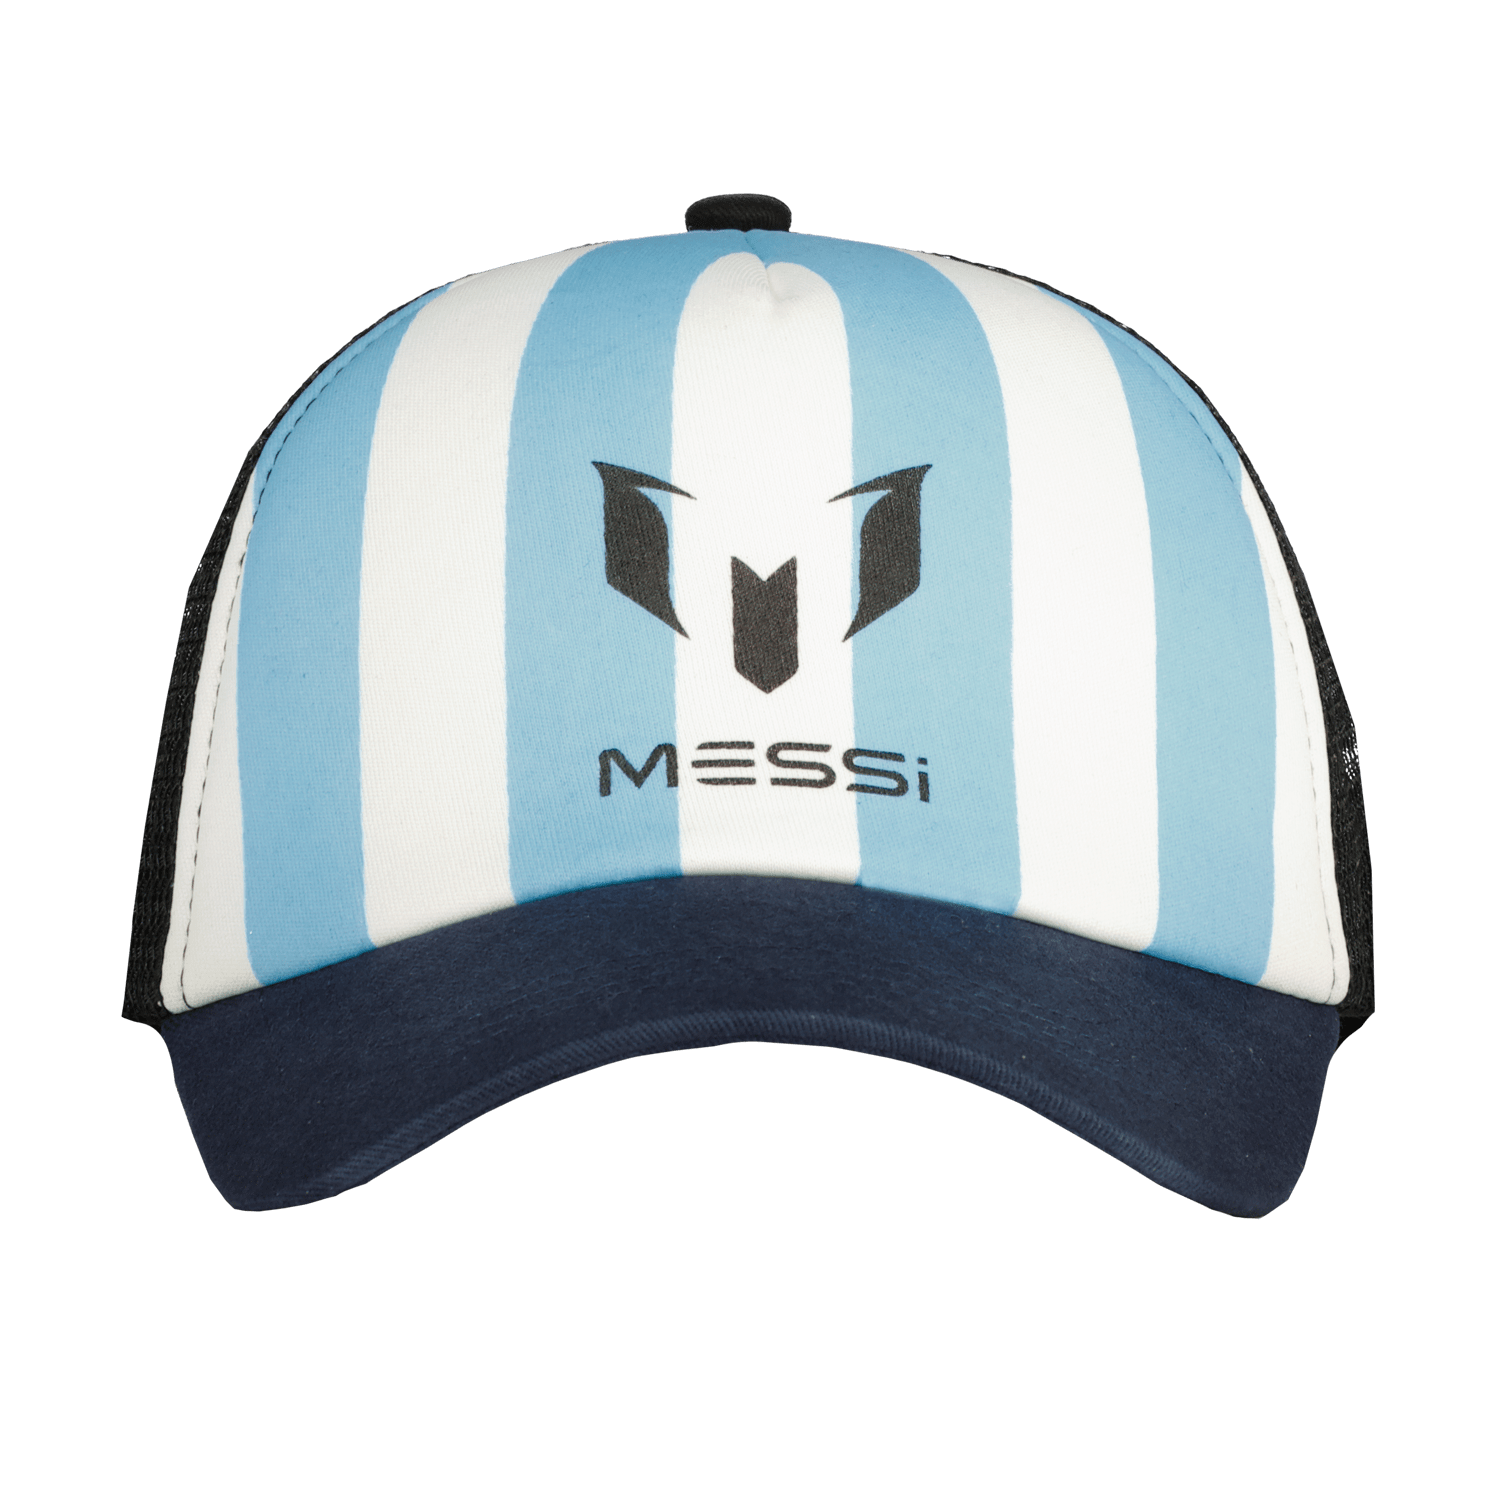 VINGINO x Messi gestreepte pet met logo blauw wit Jongens Polyester Streep